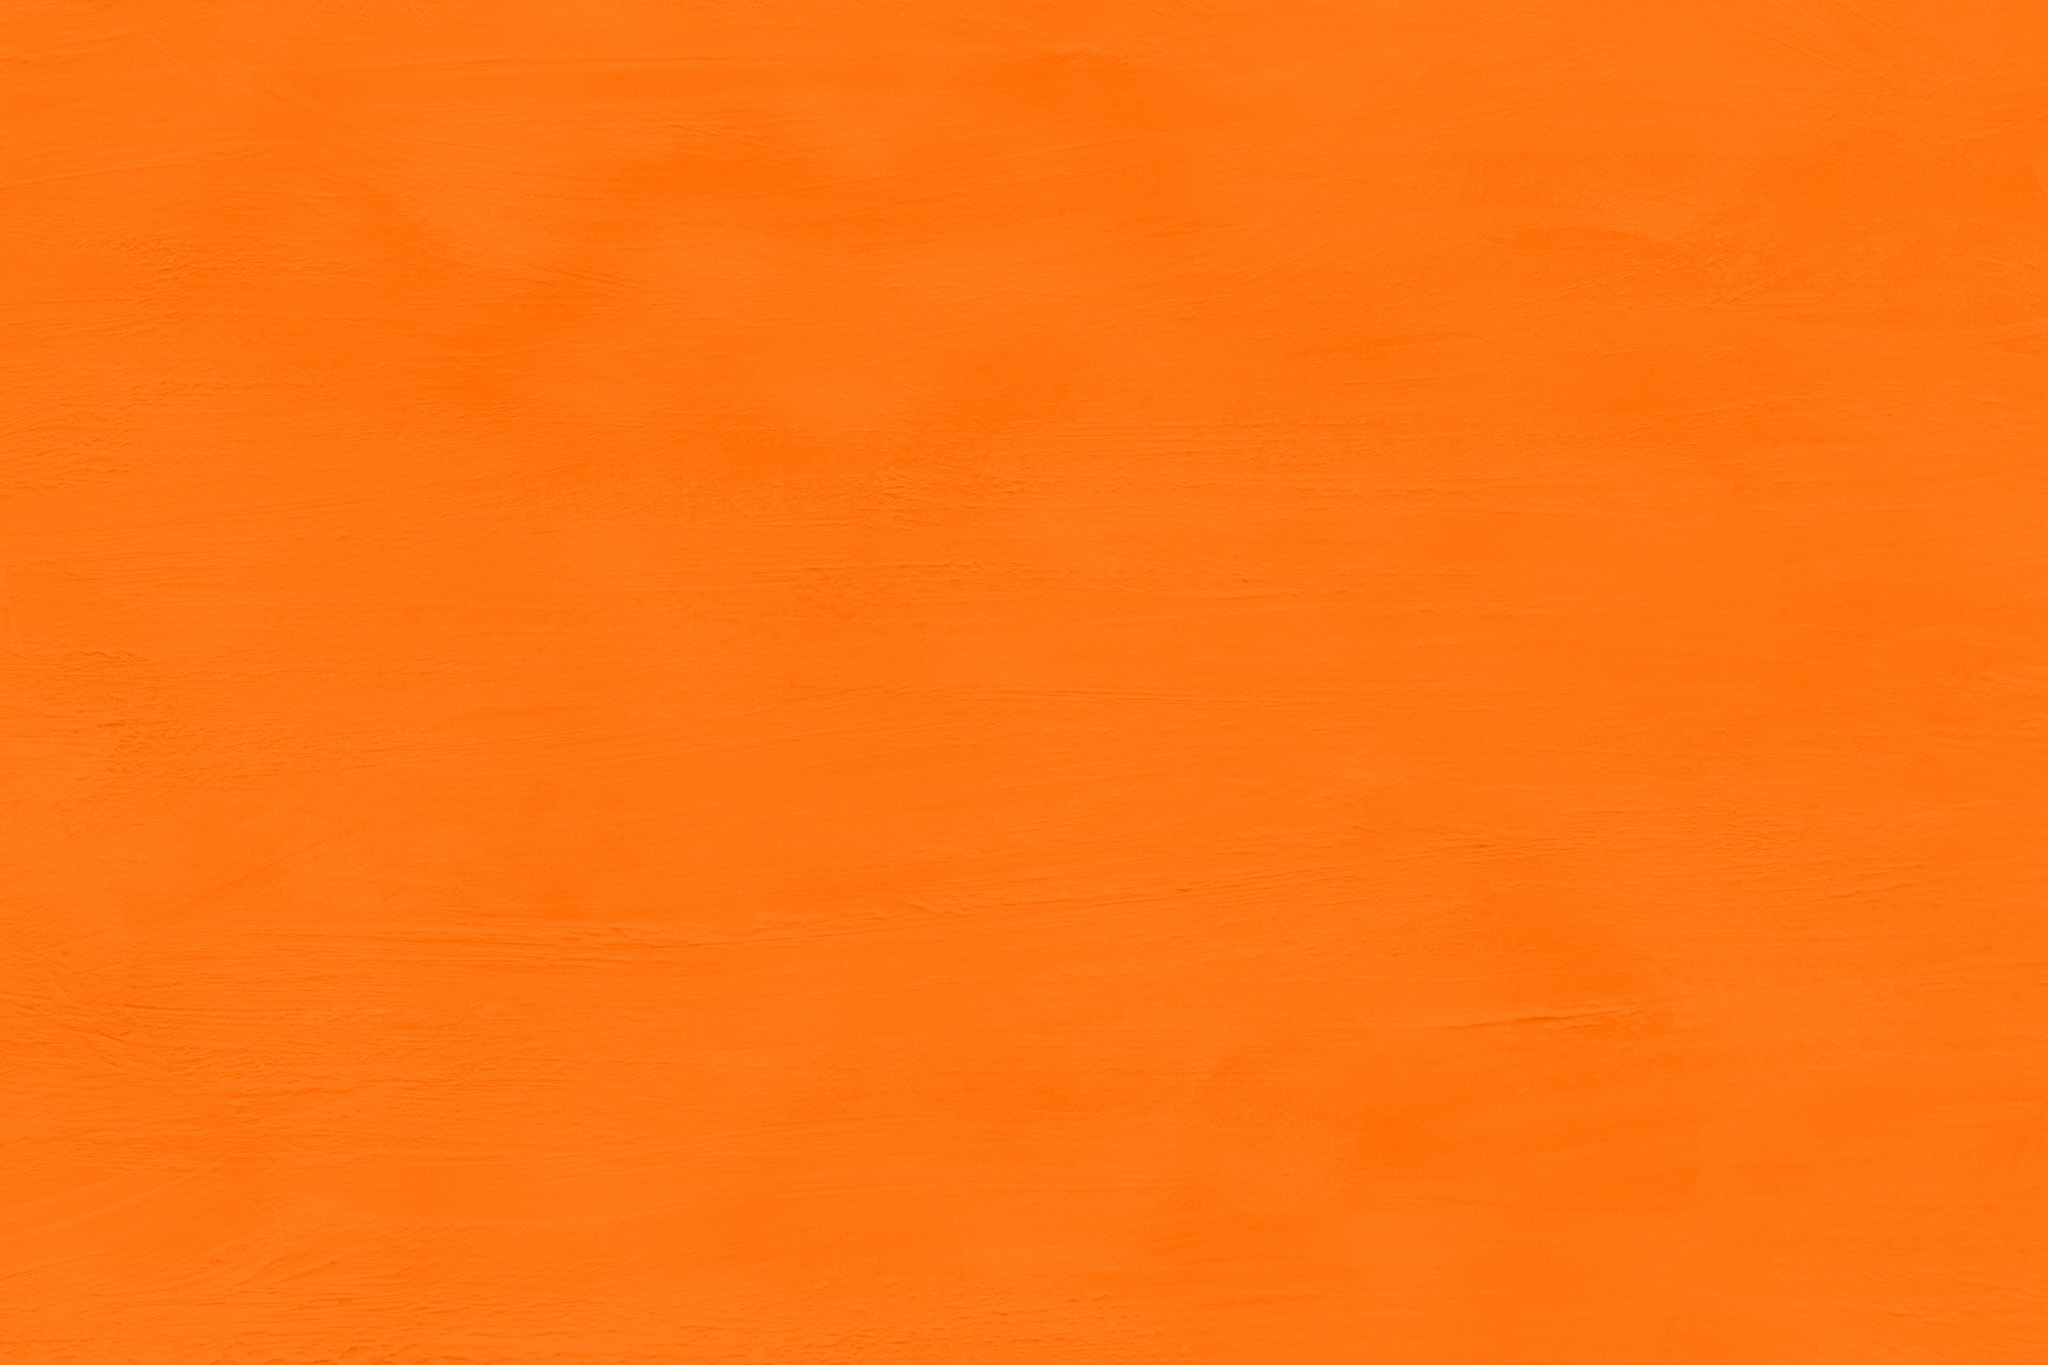 おしゃれなオレンジ色の無地の背景 の画像素材を無料ダウンロード 1 フリー素材 Beiz Images